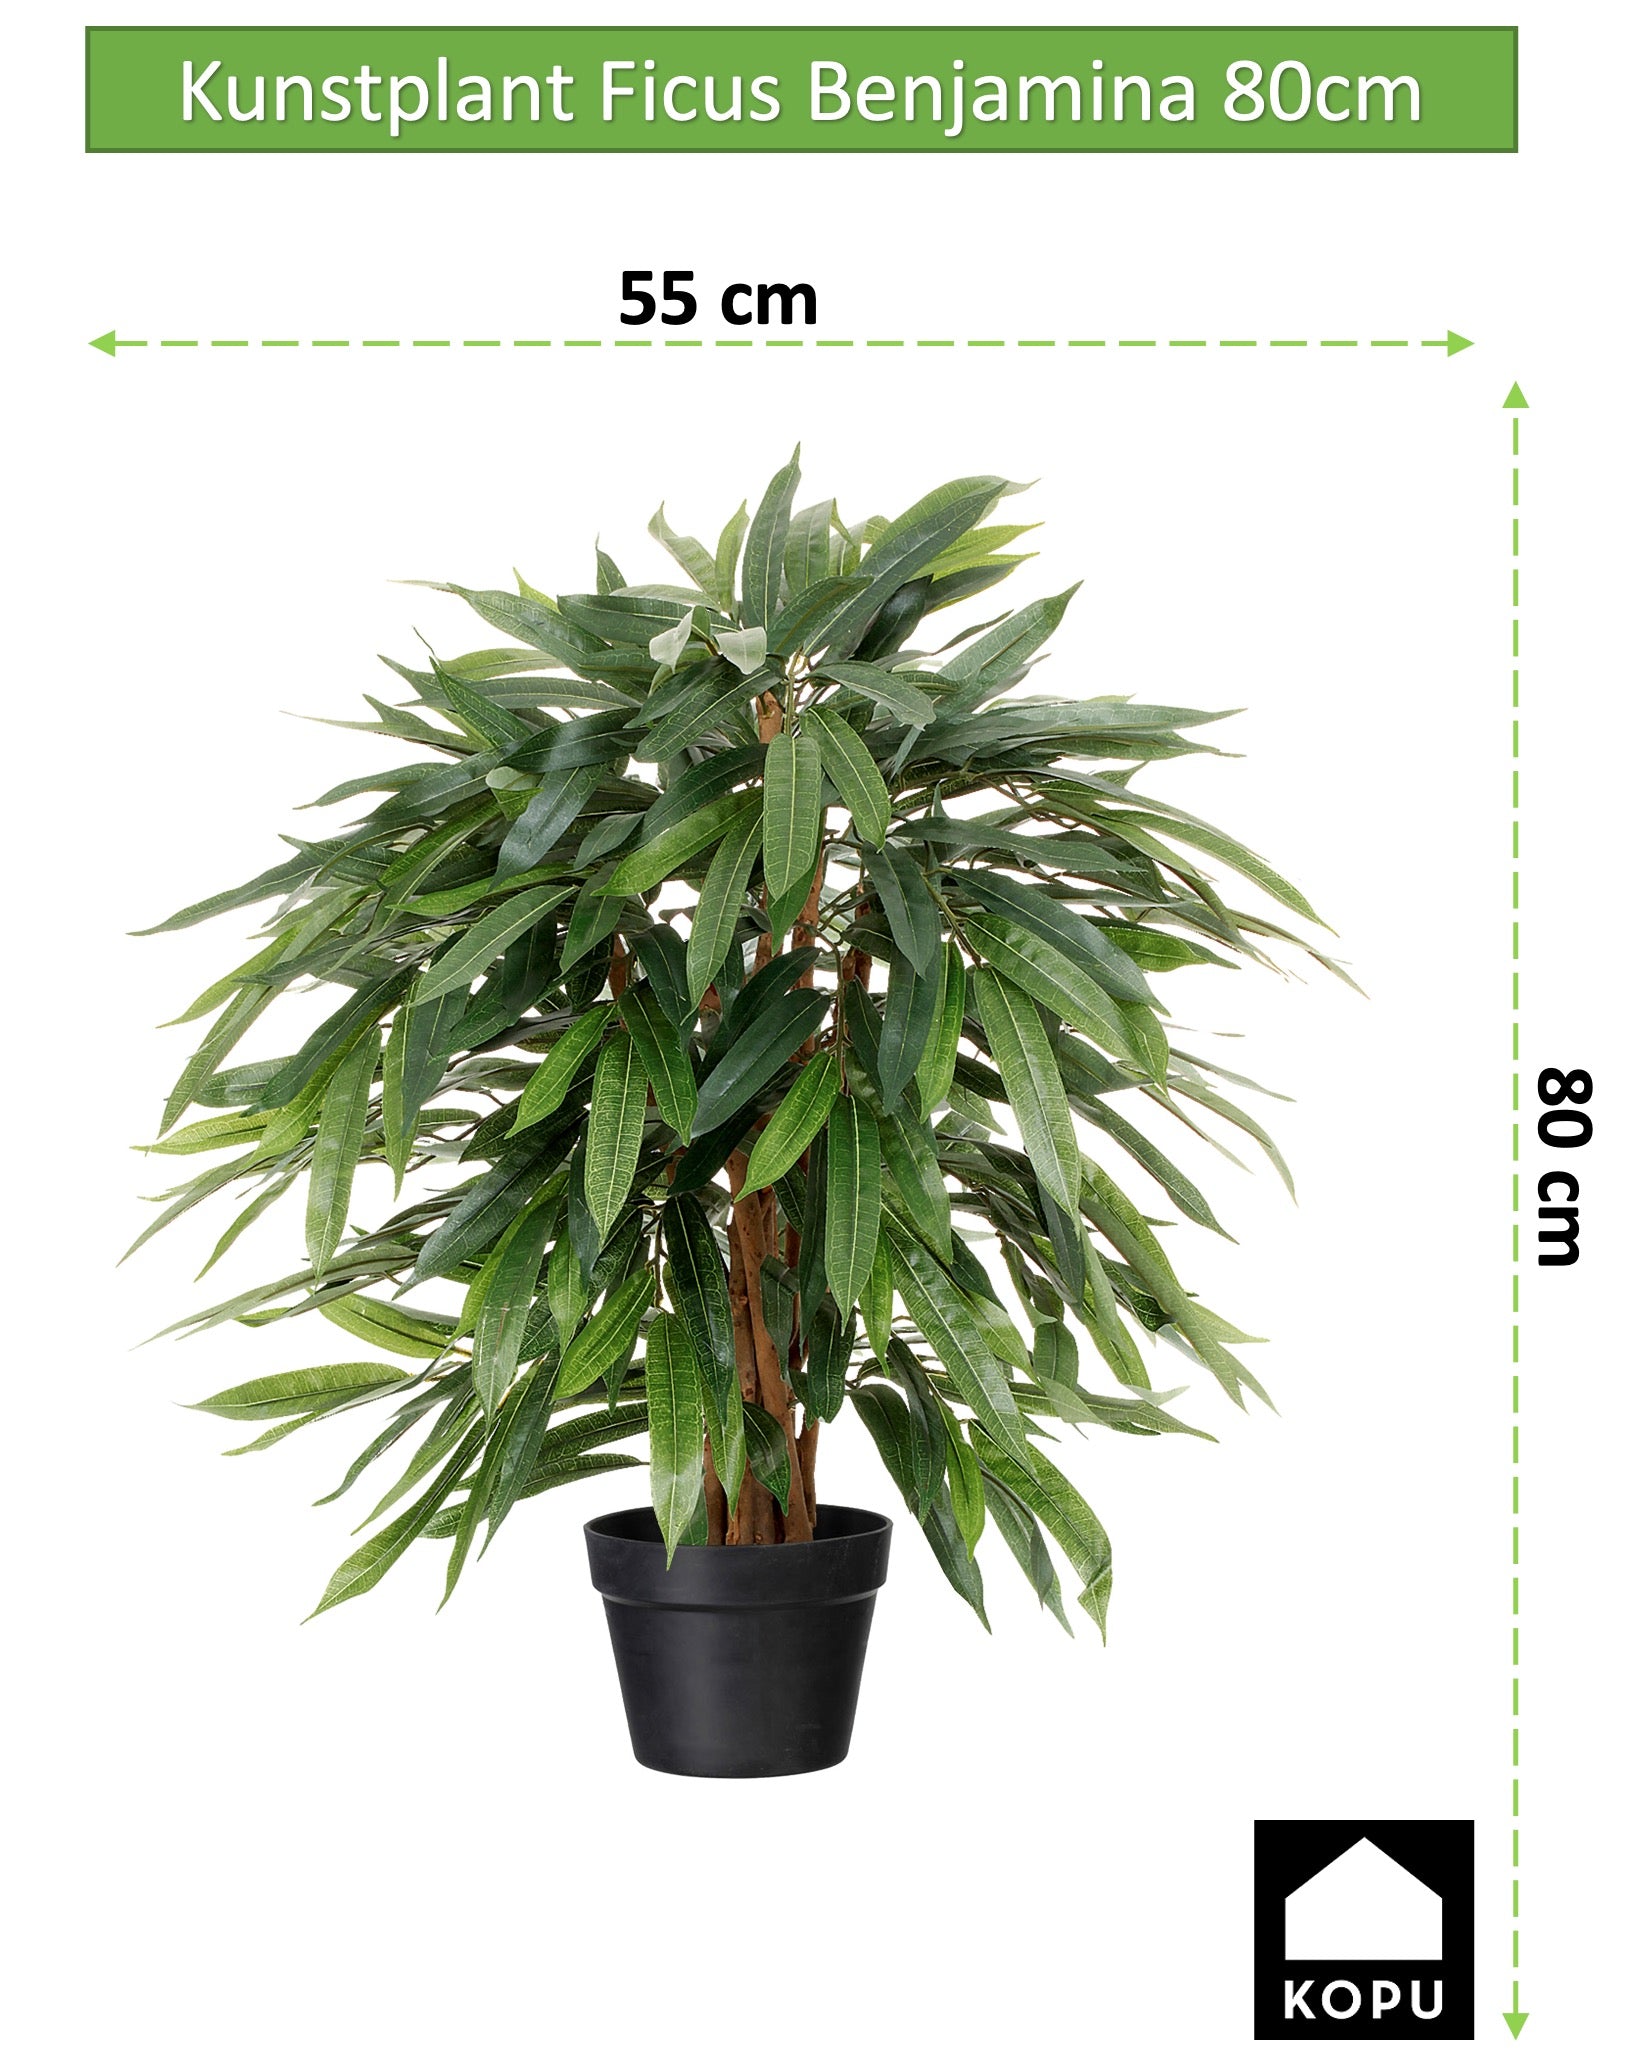 Kopu® Kunstpflanze Ficus Benjamina 80 cm im schwarzen Topf – Kunstpflanze